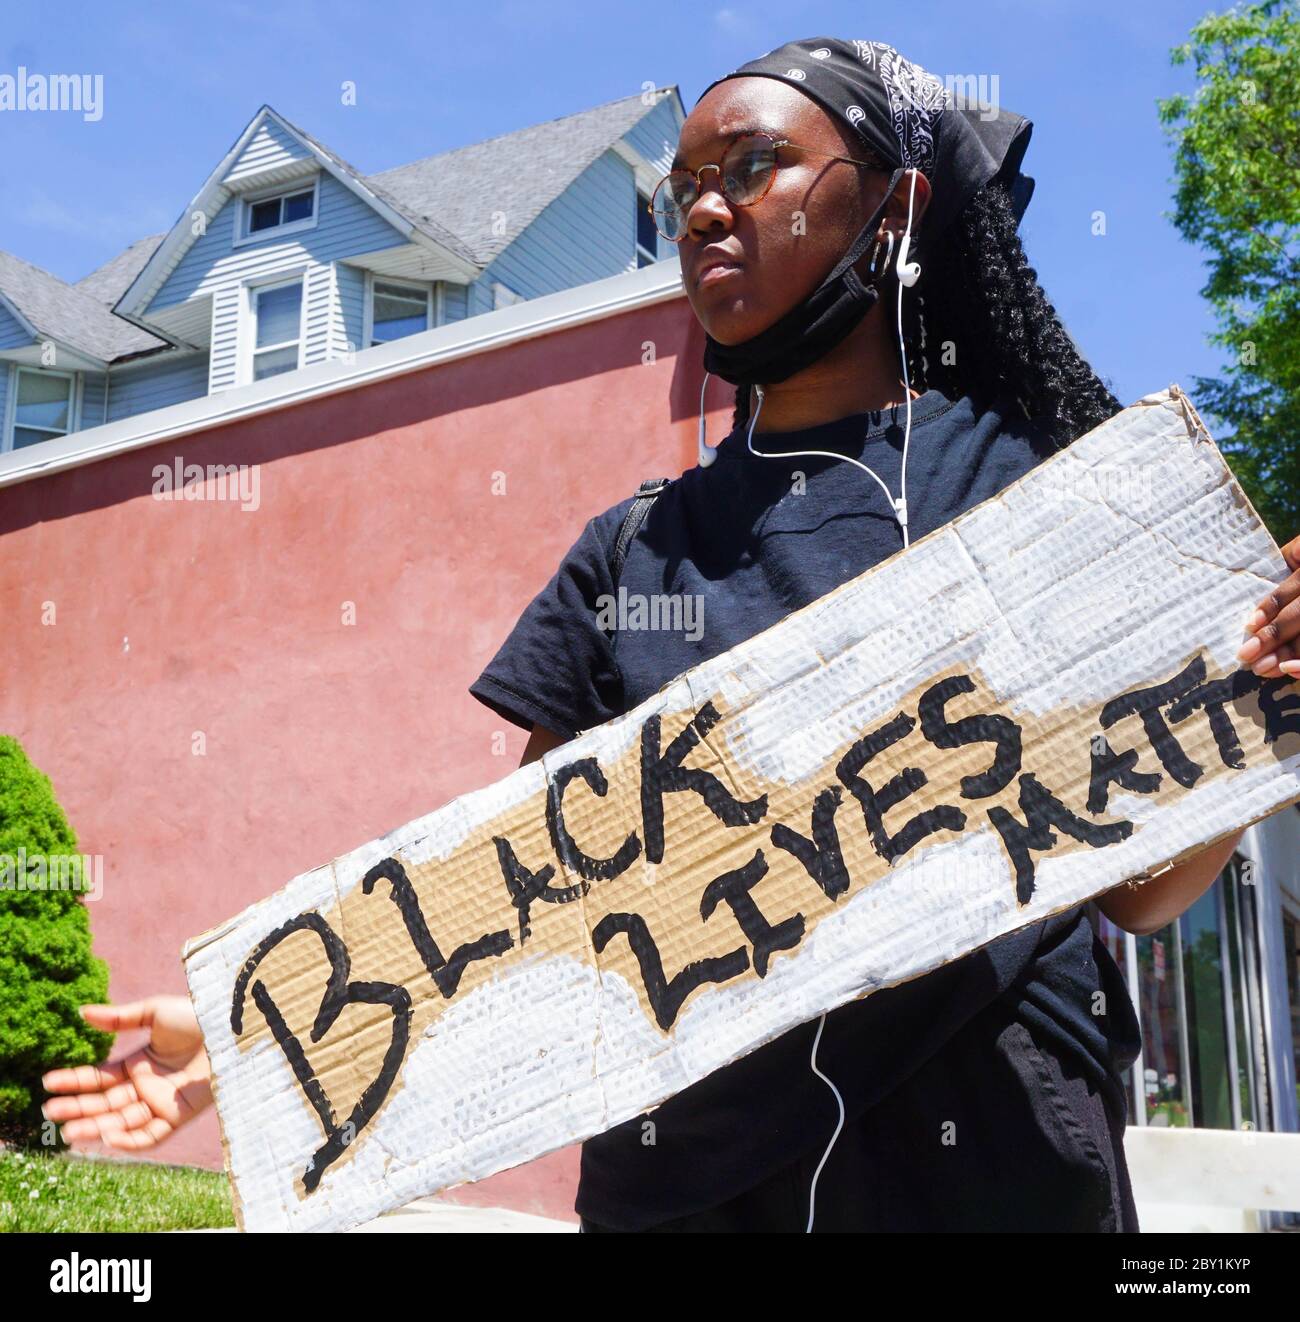 Jeune Black Female tenant Black Lives Matter signe à Black Lives Matter George Floyd protestation à Ridgefield Park, New Jersey, comté de bergen, USA Monda Banque D'Images